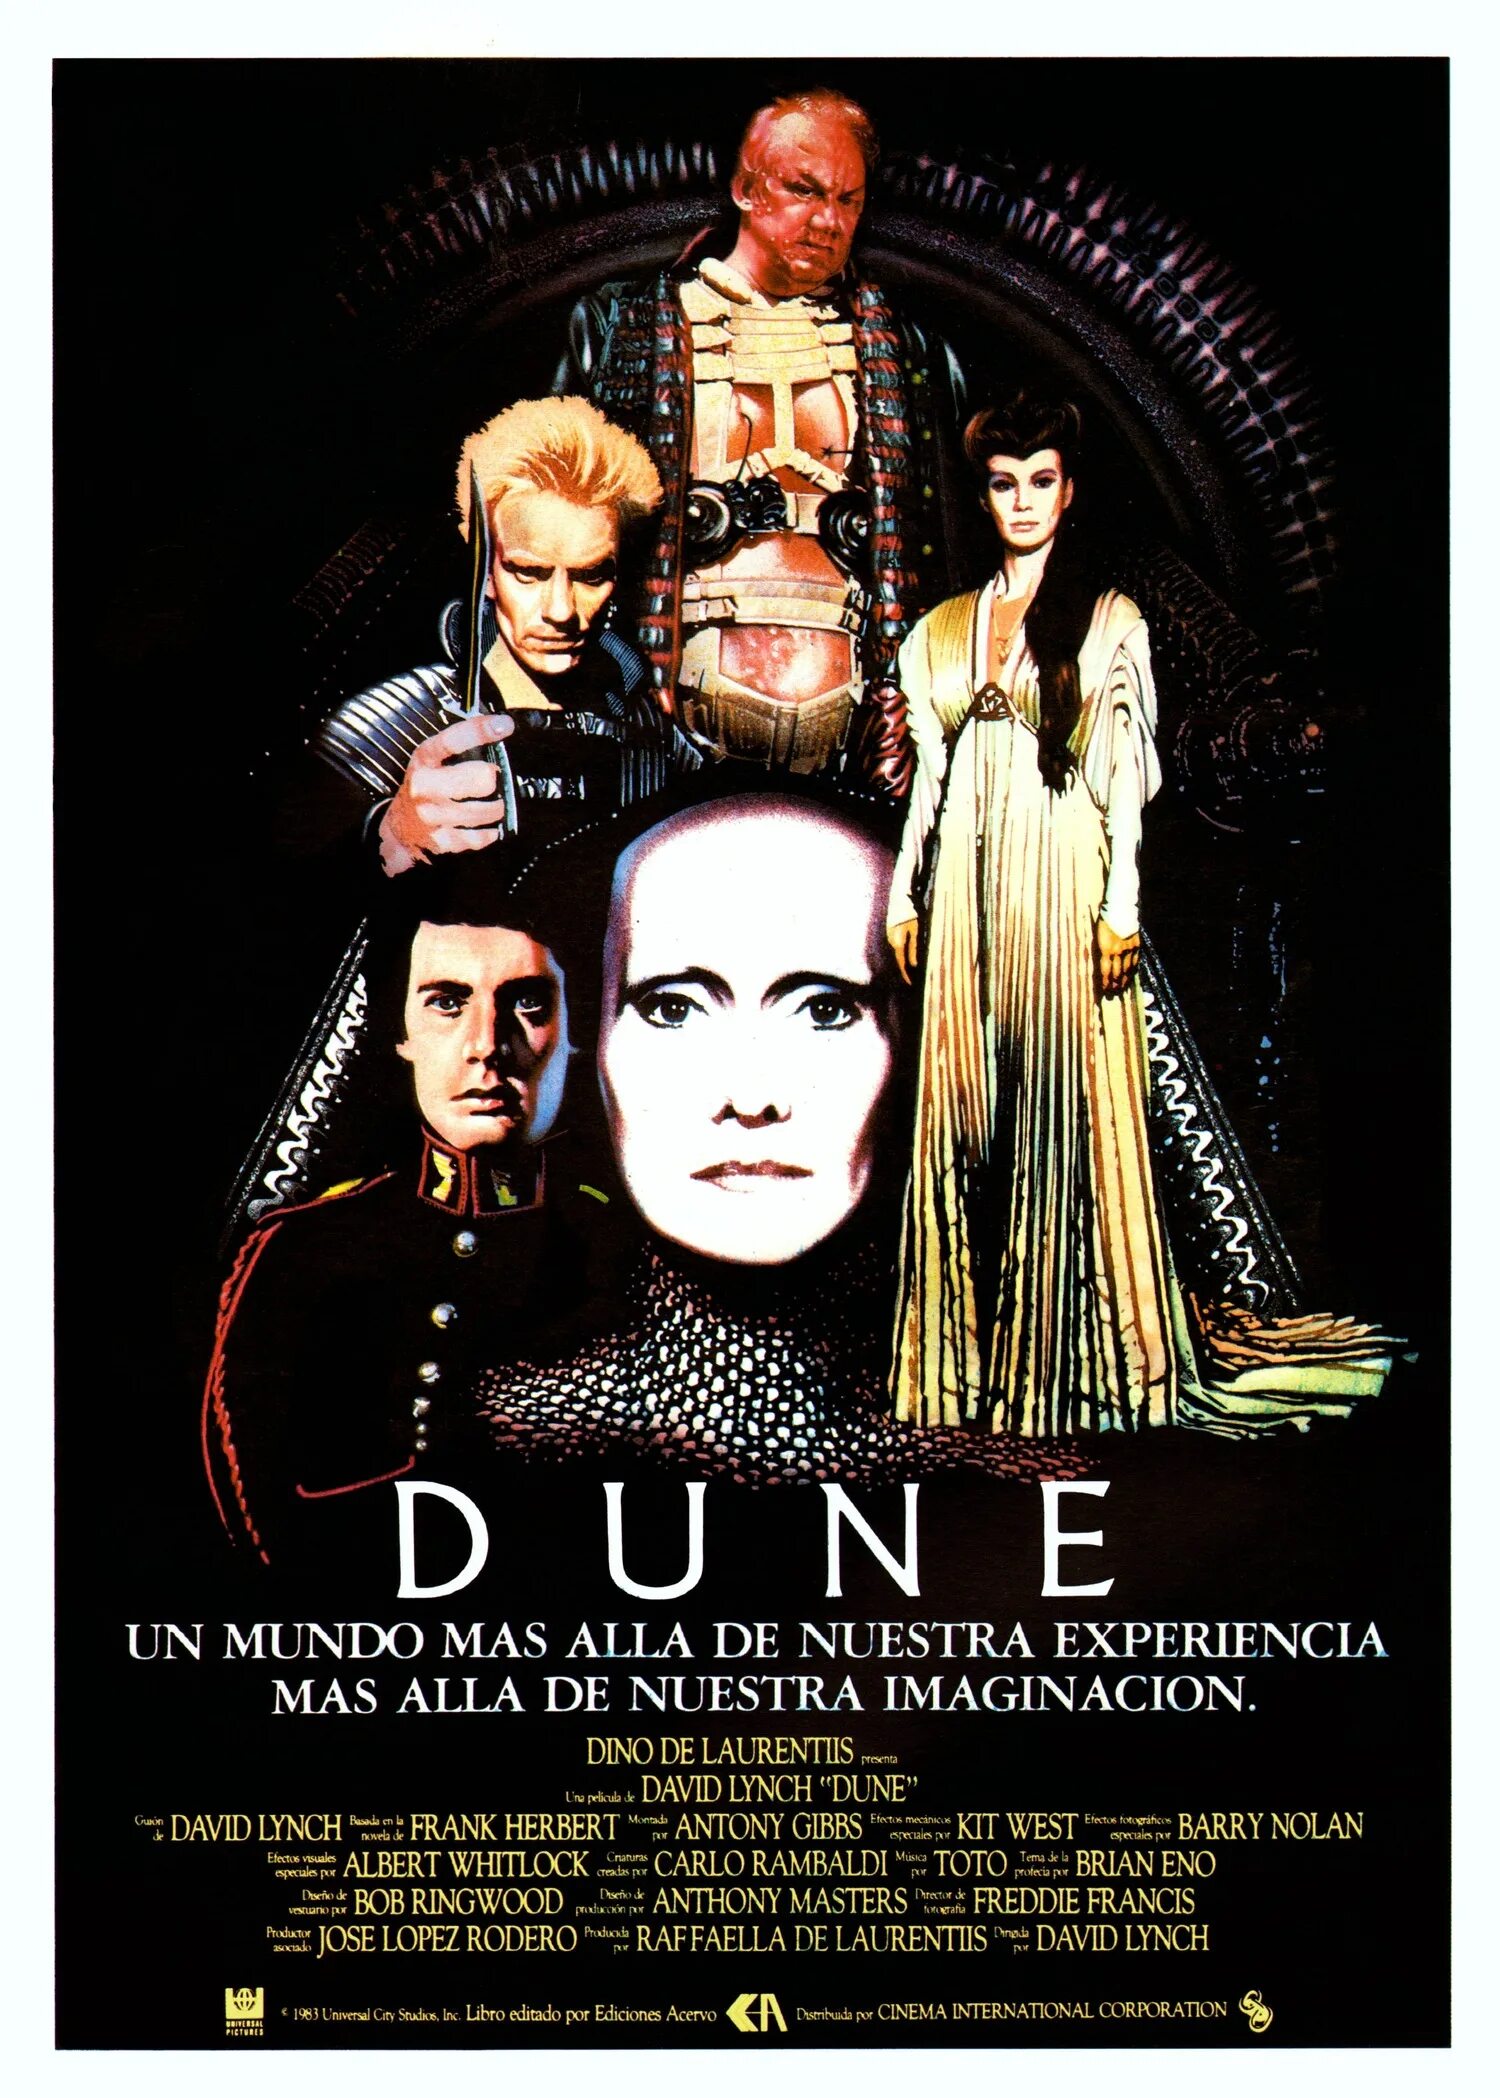 Dune poster. Дюна 1984. Дюна Дэвид Линч. Dune 1984 poster. Дюна 1984 Постер.